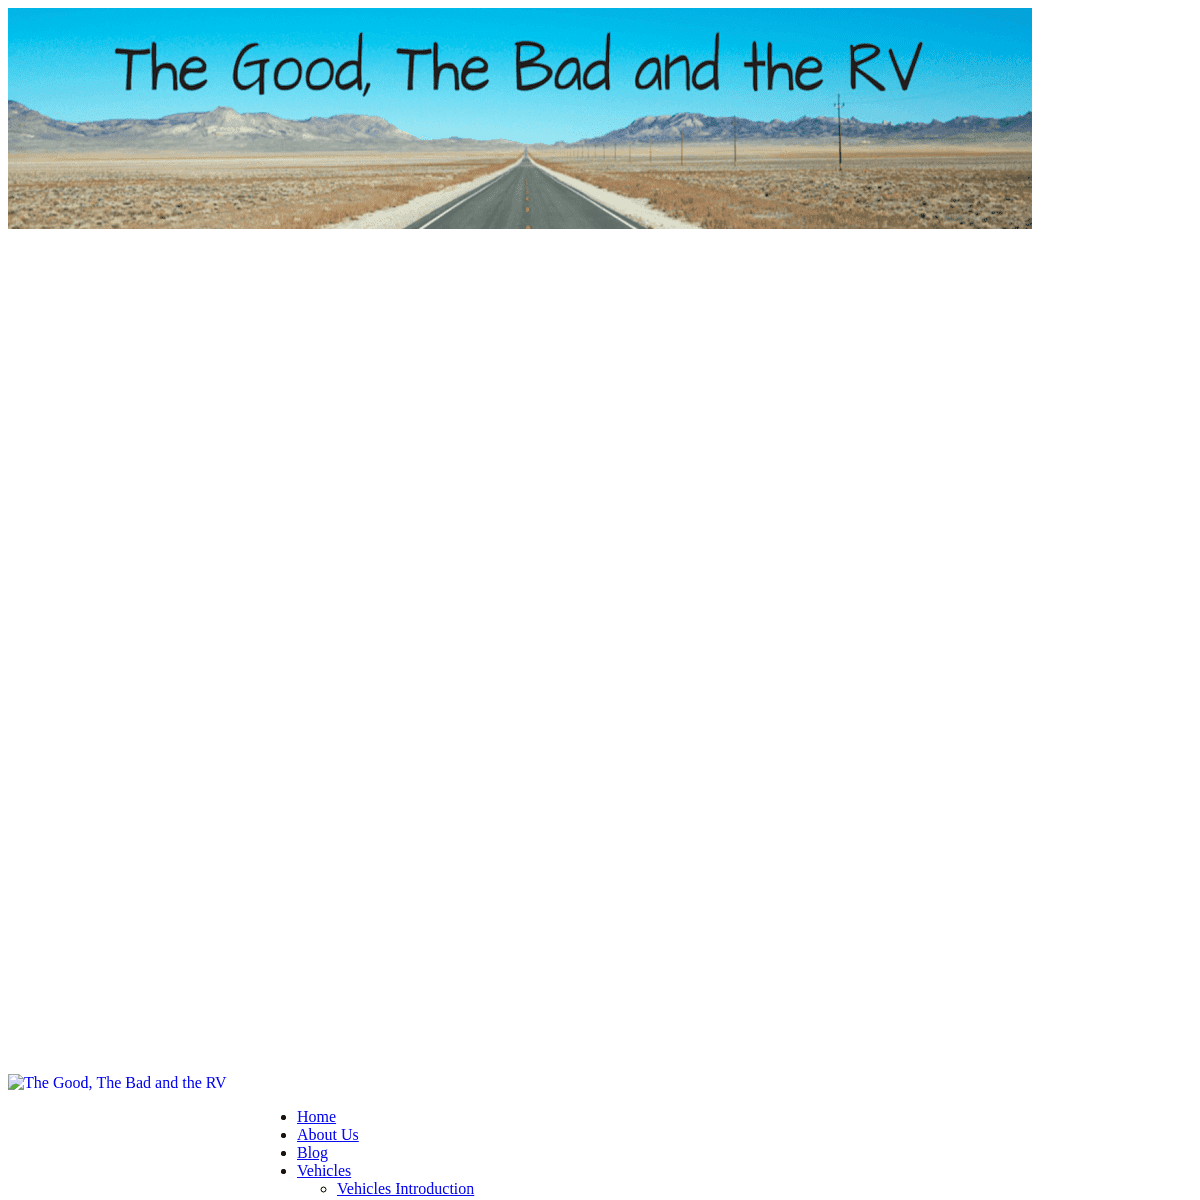 The Good, The Bad and the RV - The Good, The Bad and the RV